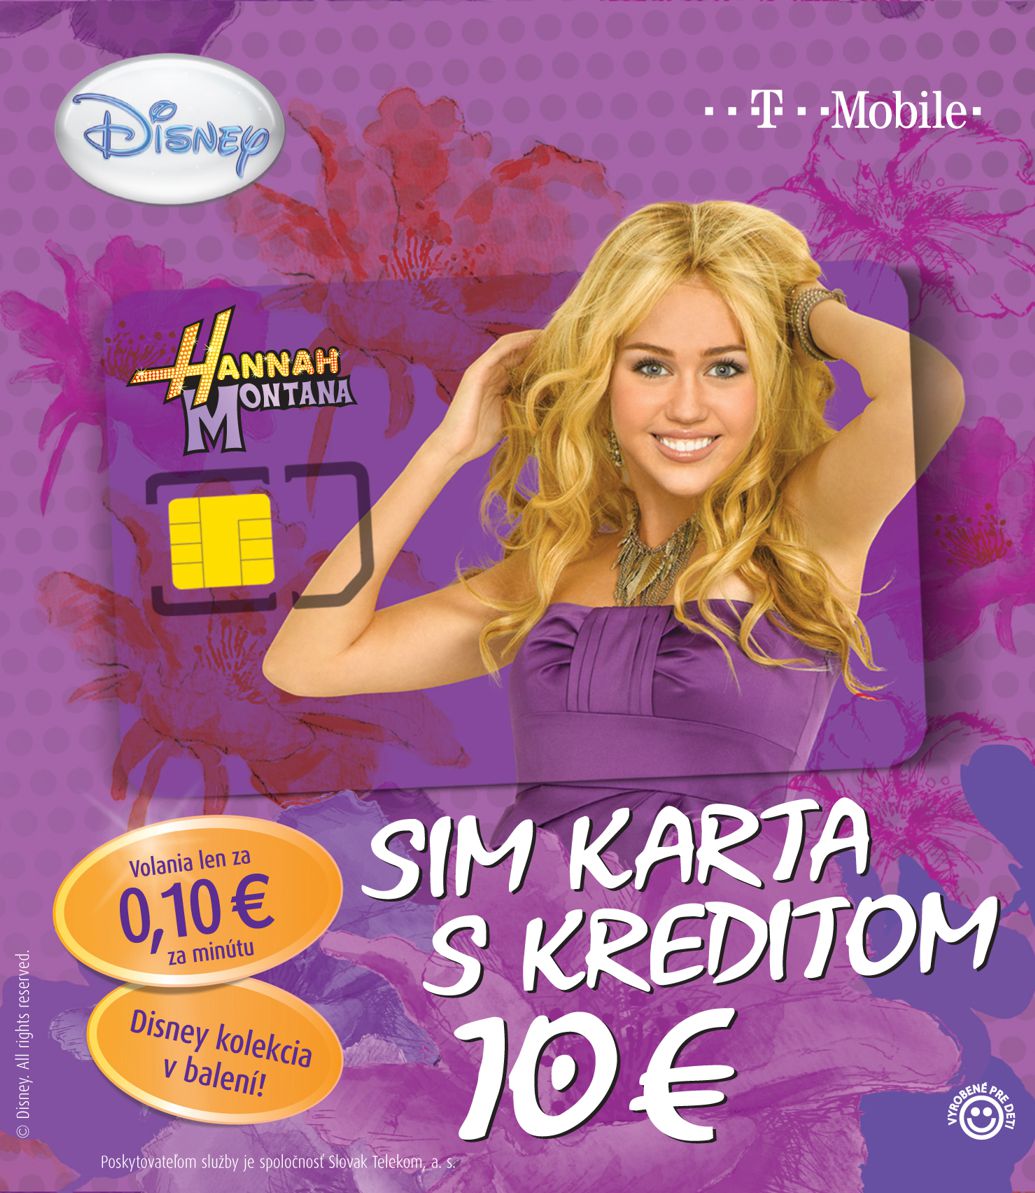 SIM-karta-Hannah-Montana.jpg